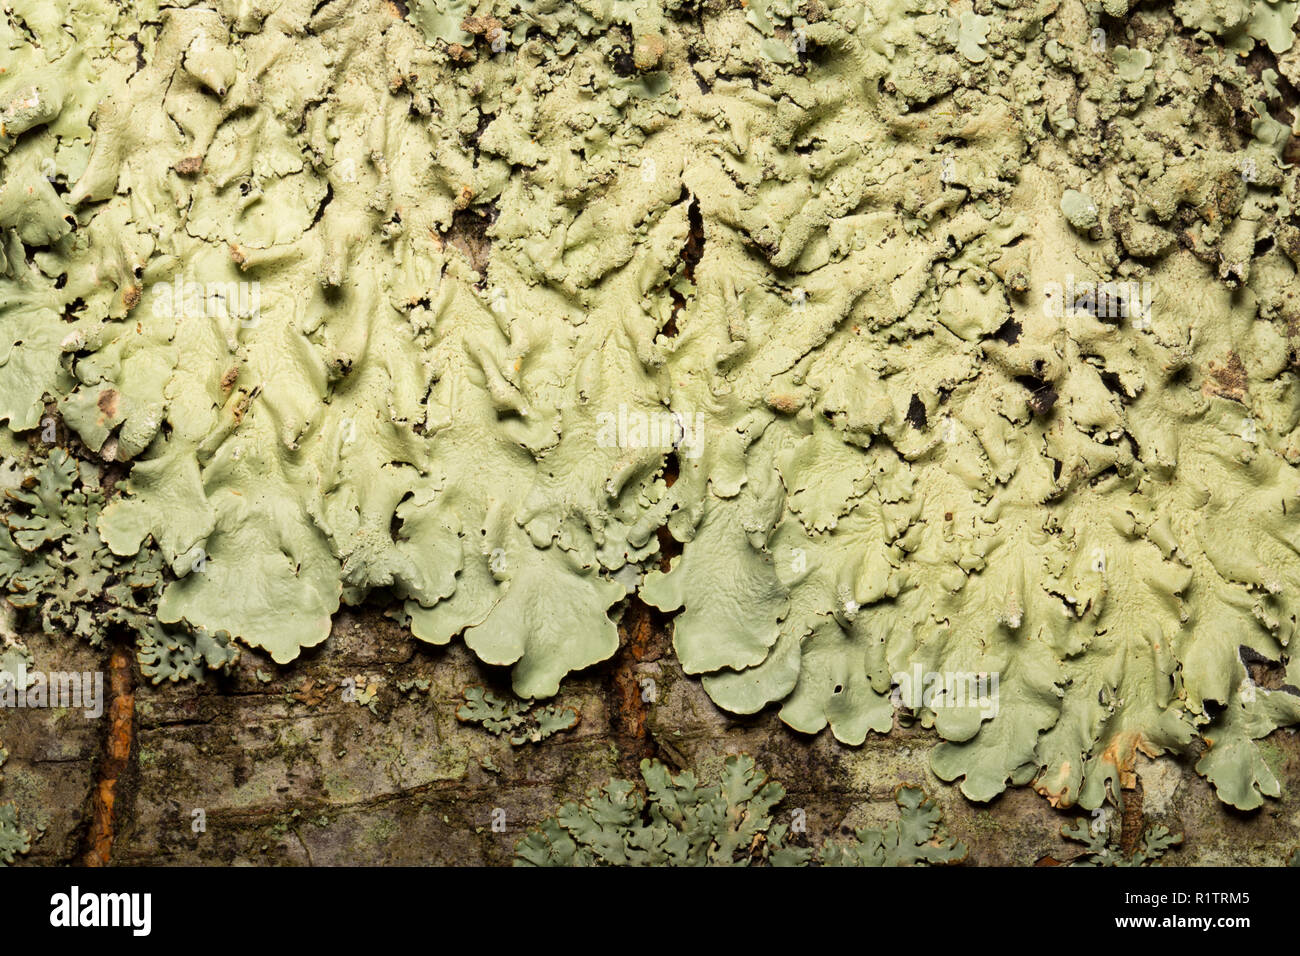 Common Greenshield lichen, Flavoparmelia caperata, growing on Stock Photo